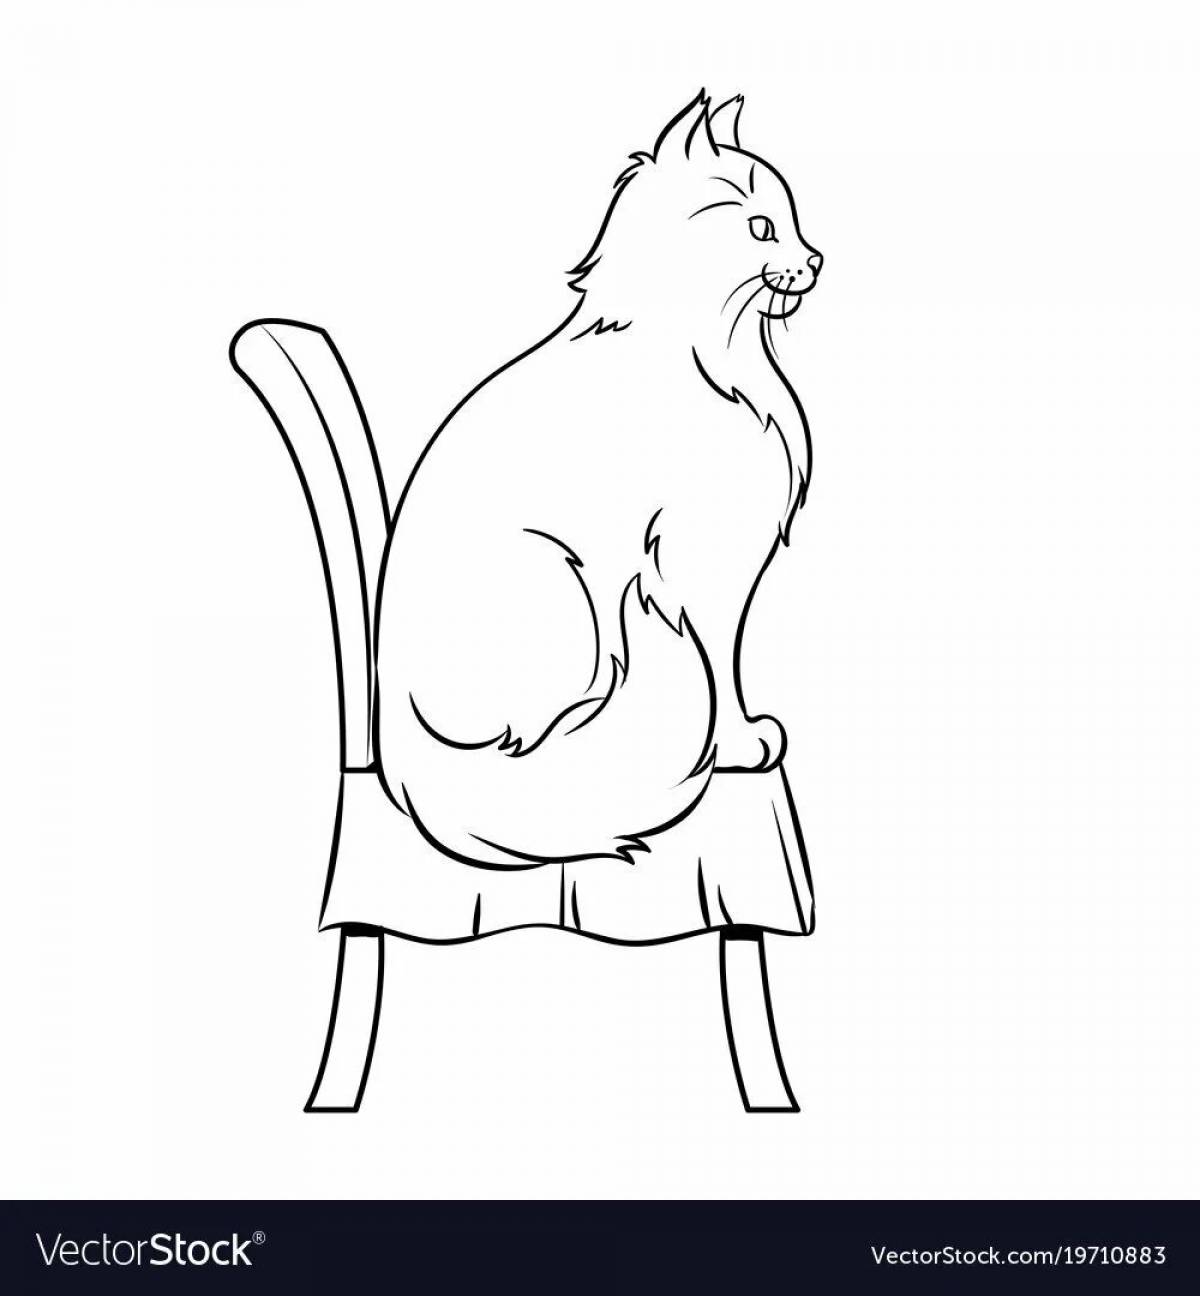 Sitting cat #11